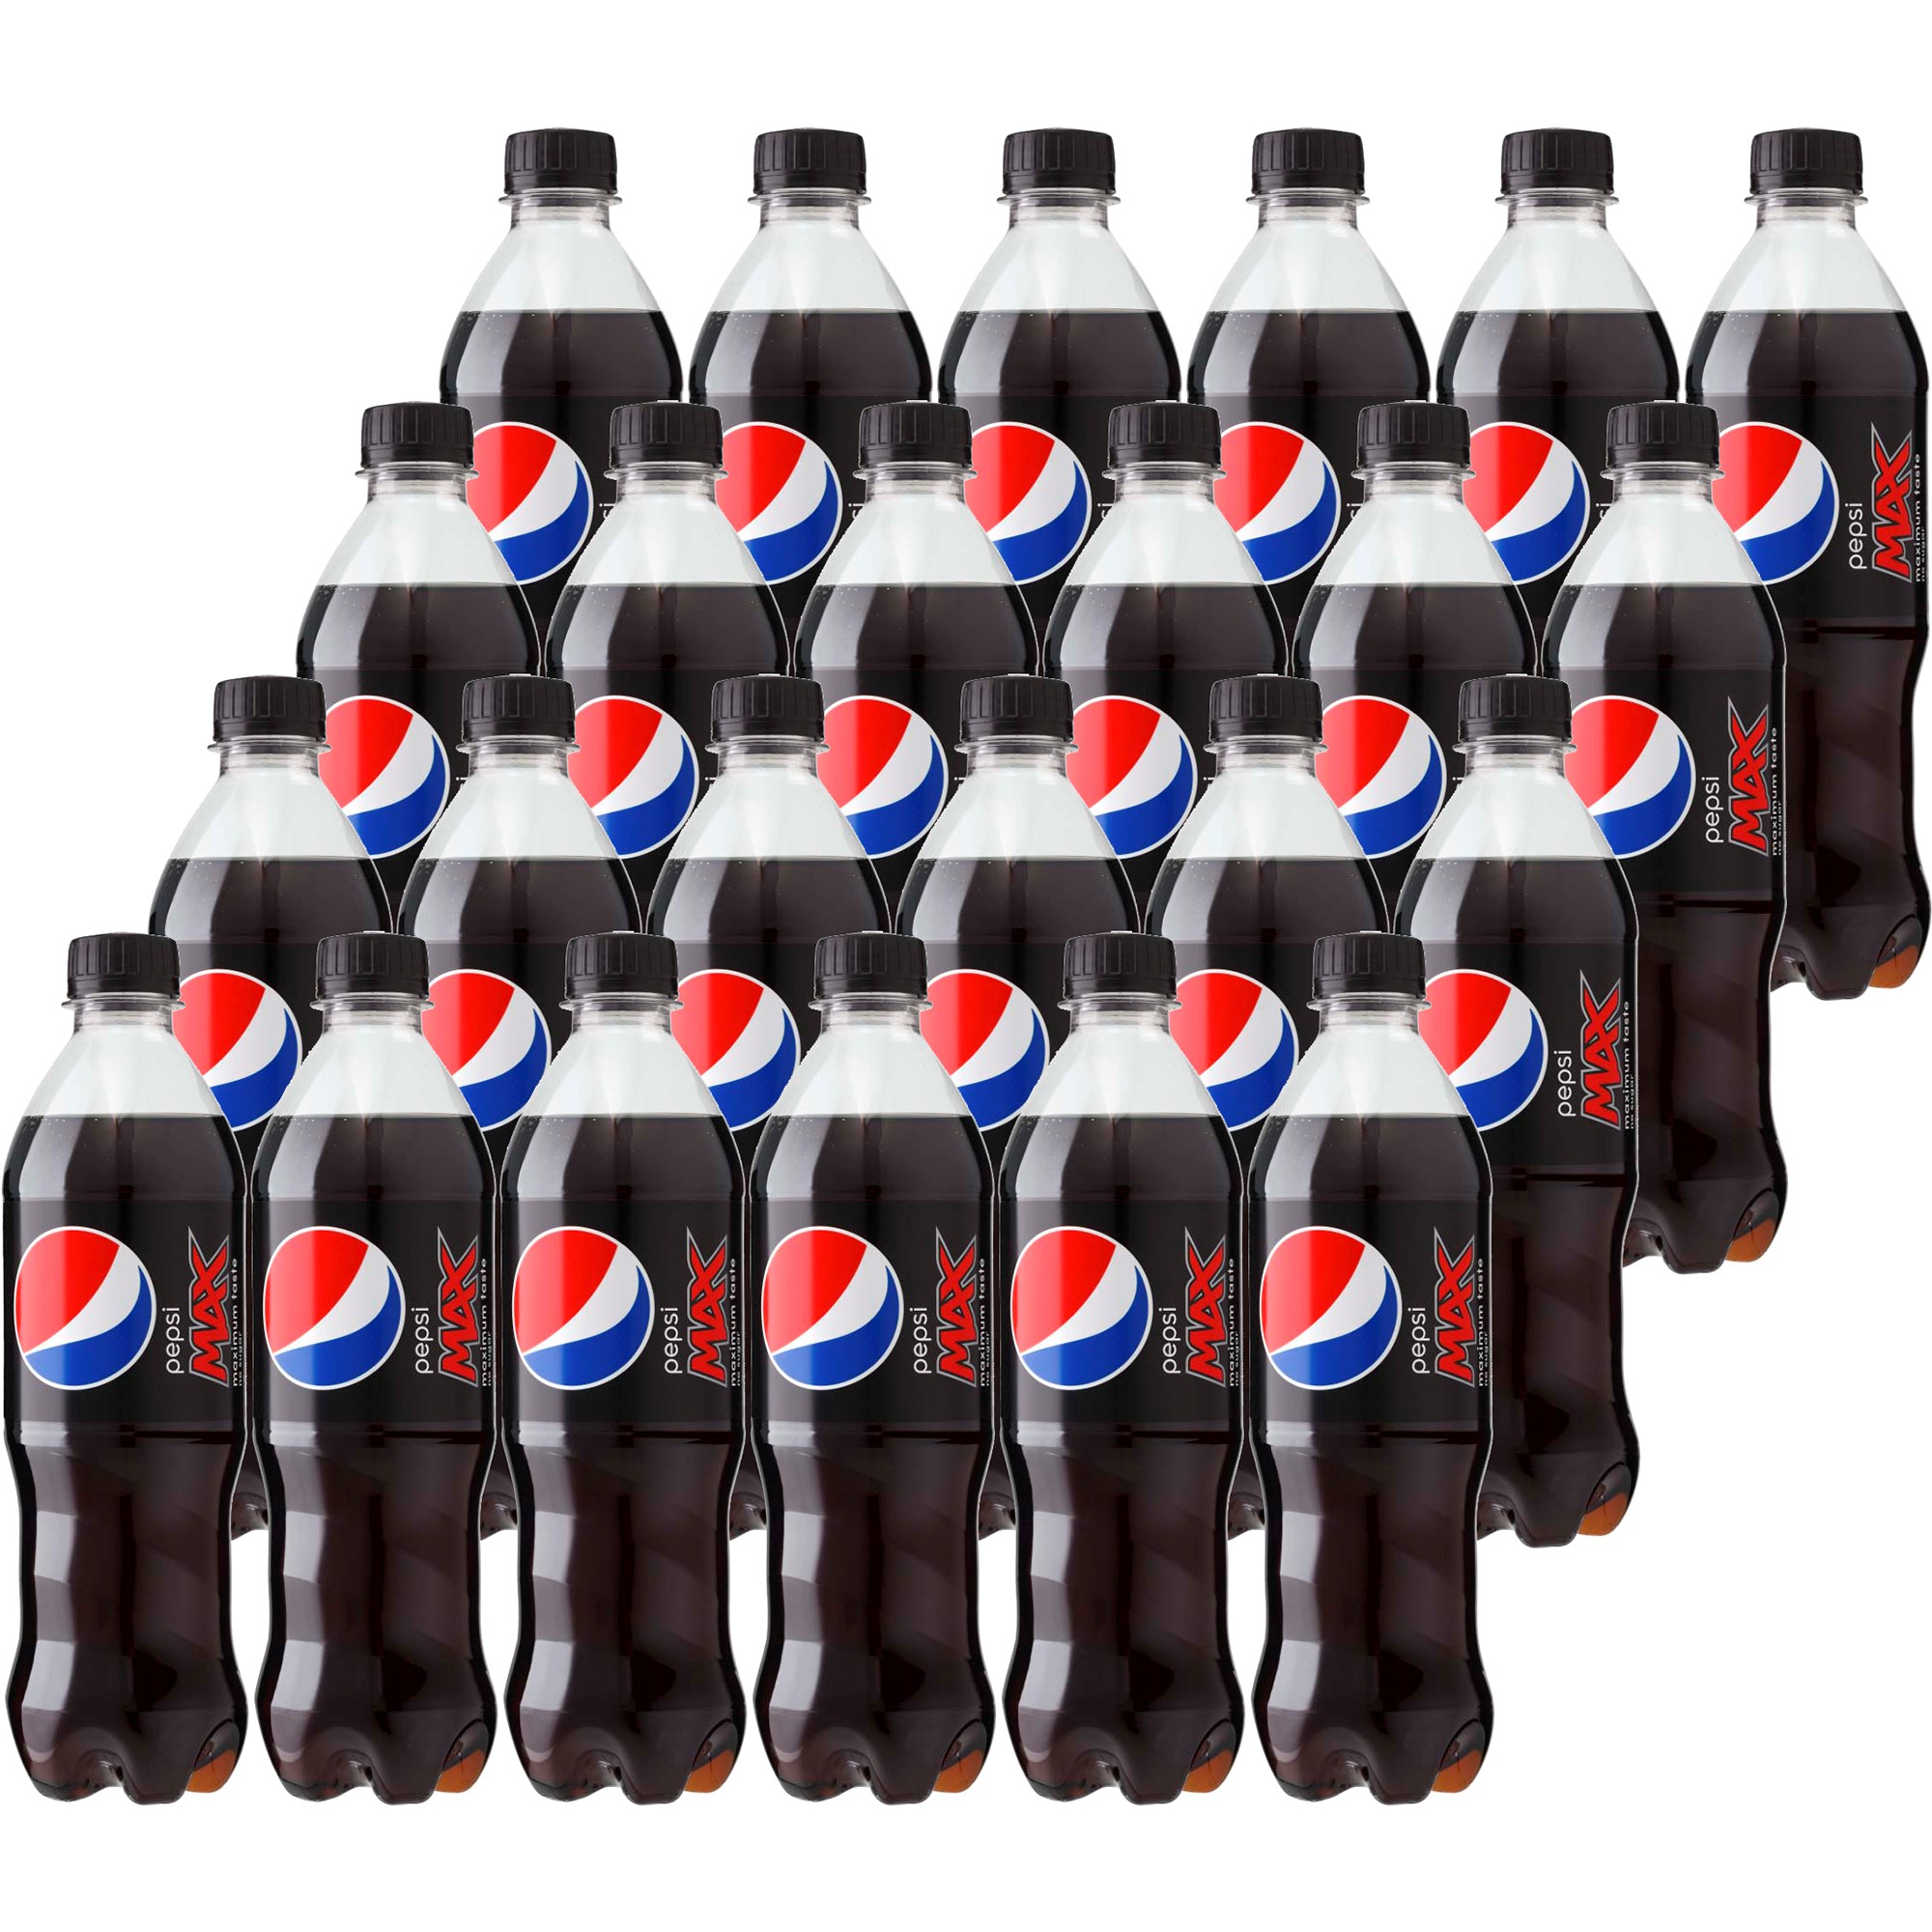 Pepsi Max 24 x 50cl